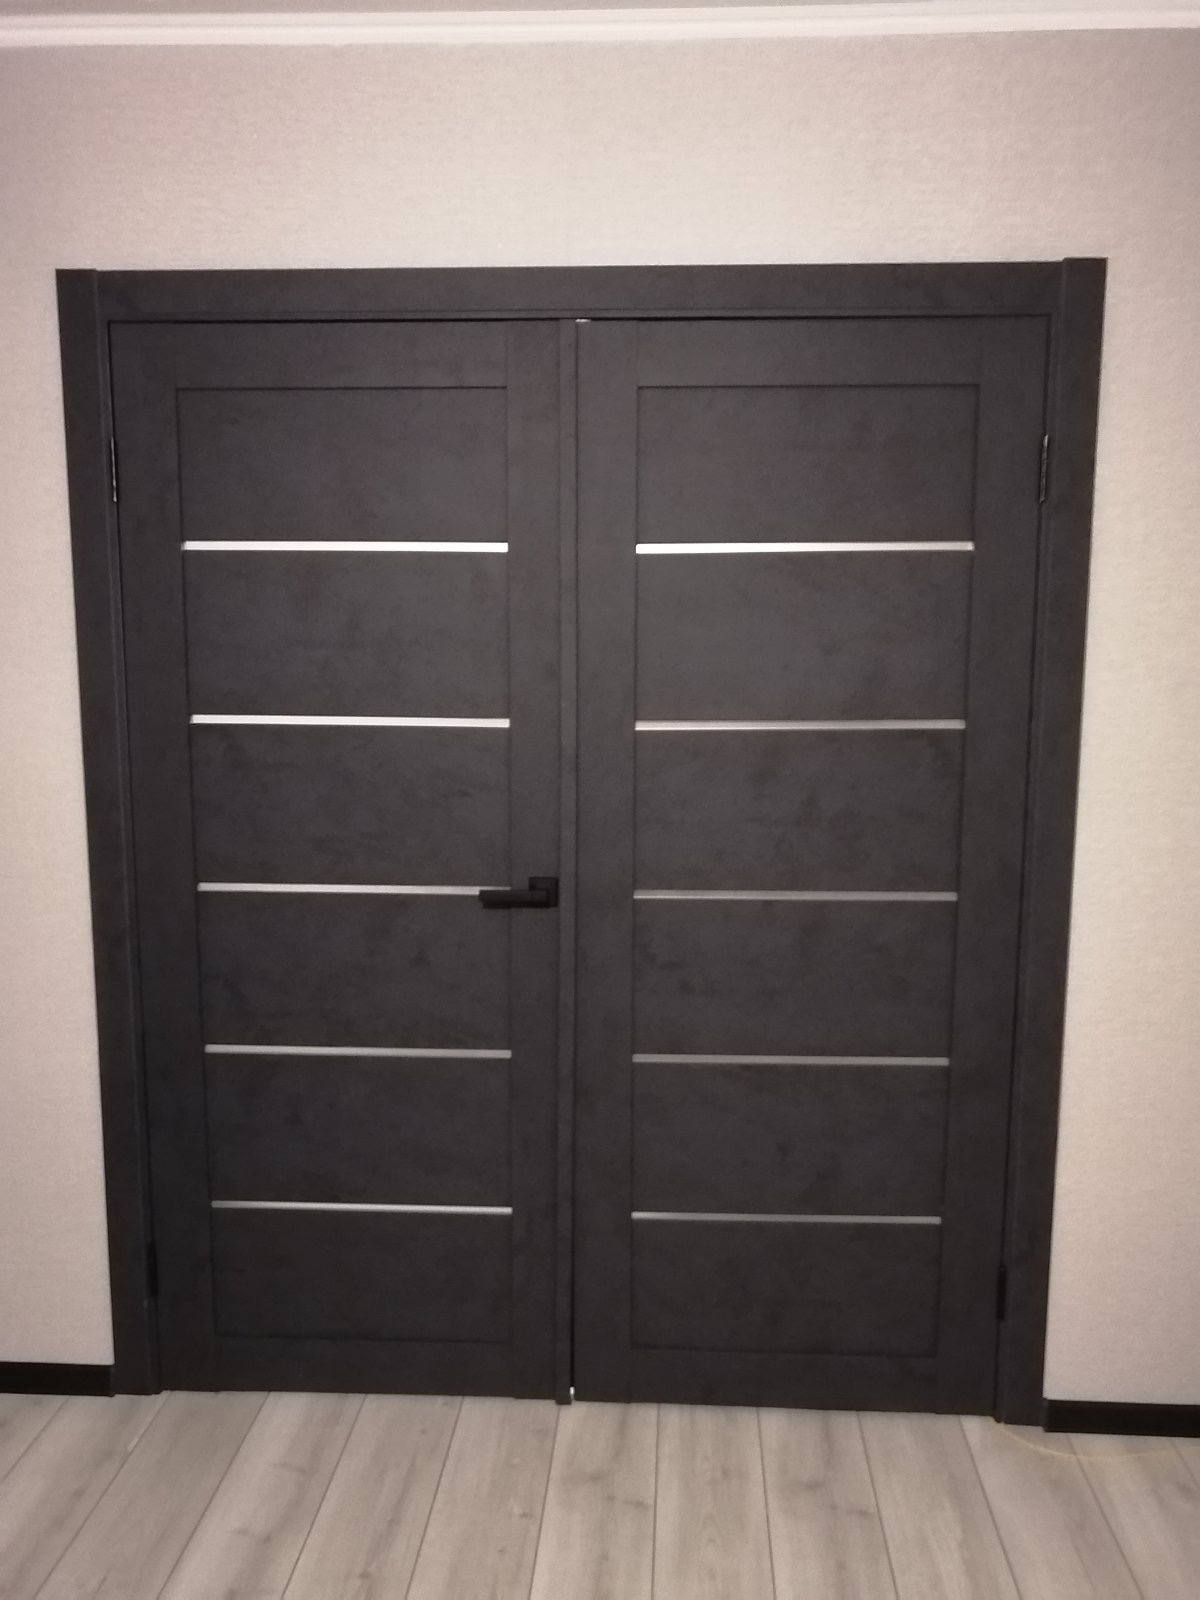 Двери Легно-22, цвет Graphite Art. Производитель Эльпорта (El'Porta)